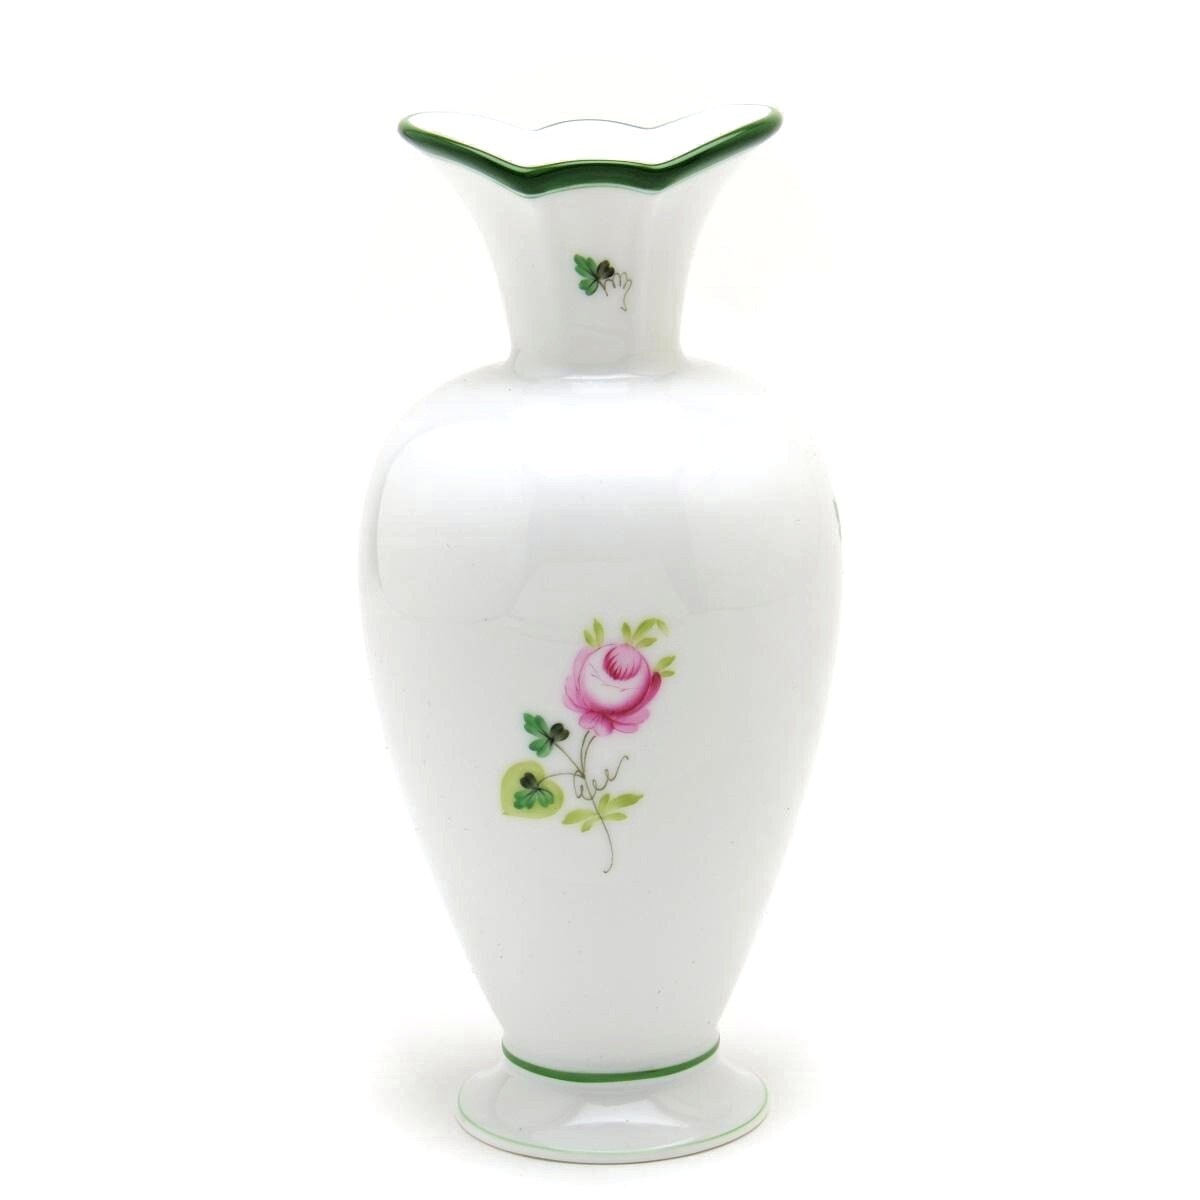 Herend Vienna Rose Vase (07053) Vase décoratif en porcelaine peint à la main Ornement de vase à fleurs Fabriqué en Hongrie Nouveau Herend, meubles, intérieur, accessoires d'intérieur, vase